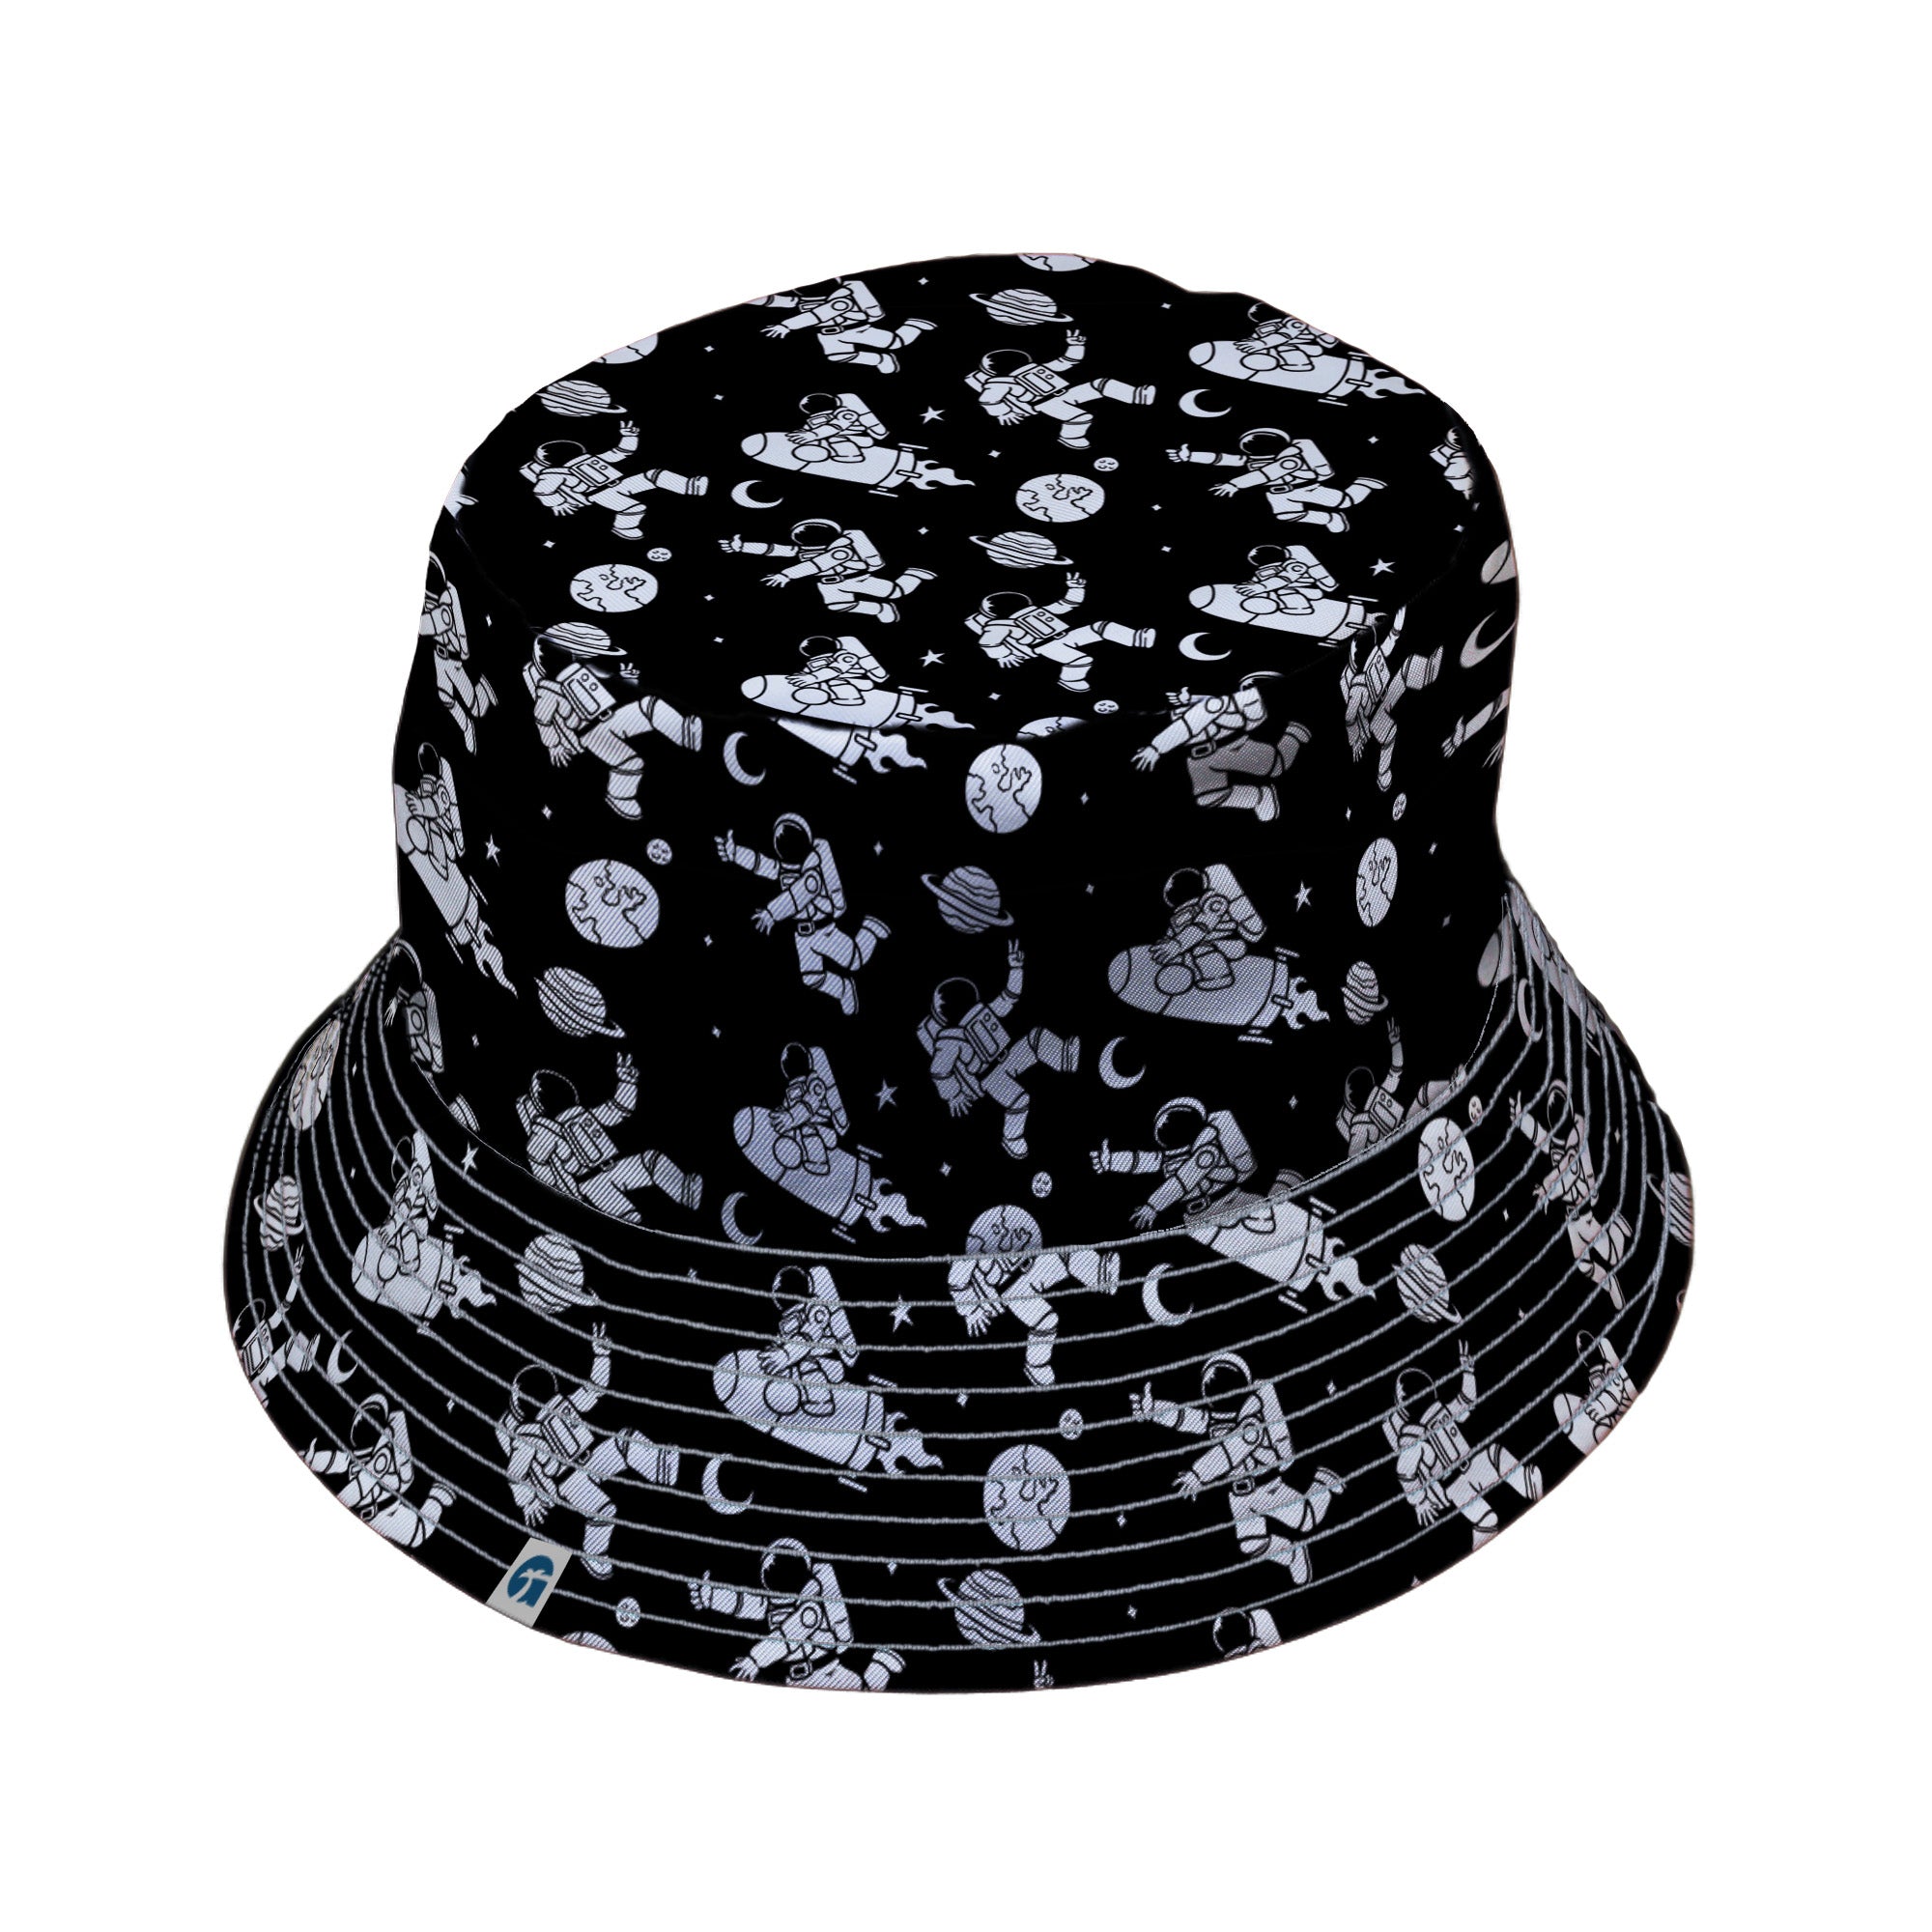 Cosmic Explorers Space Bucket Hat